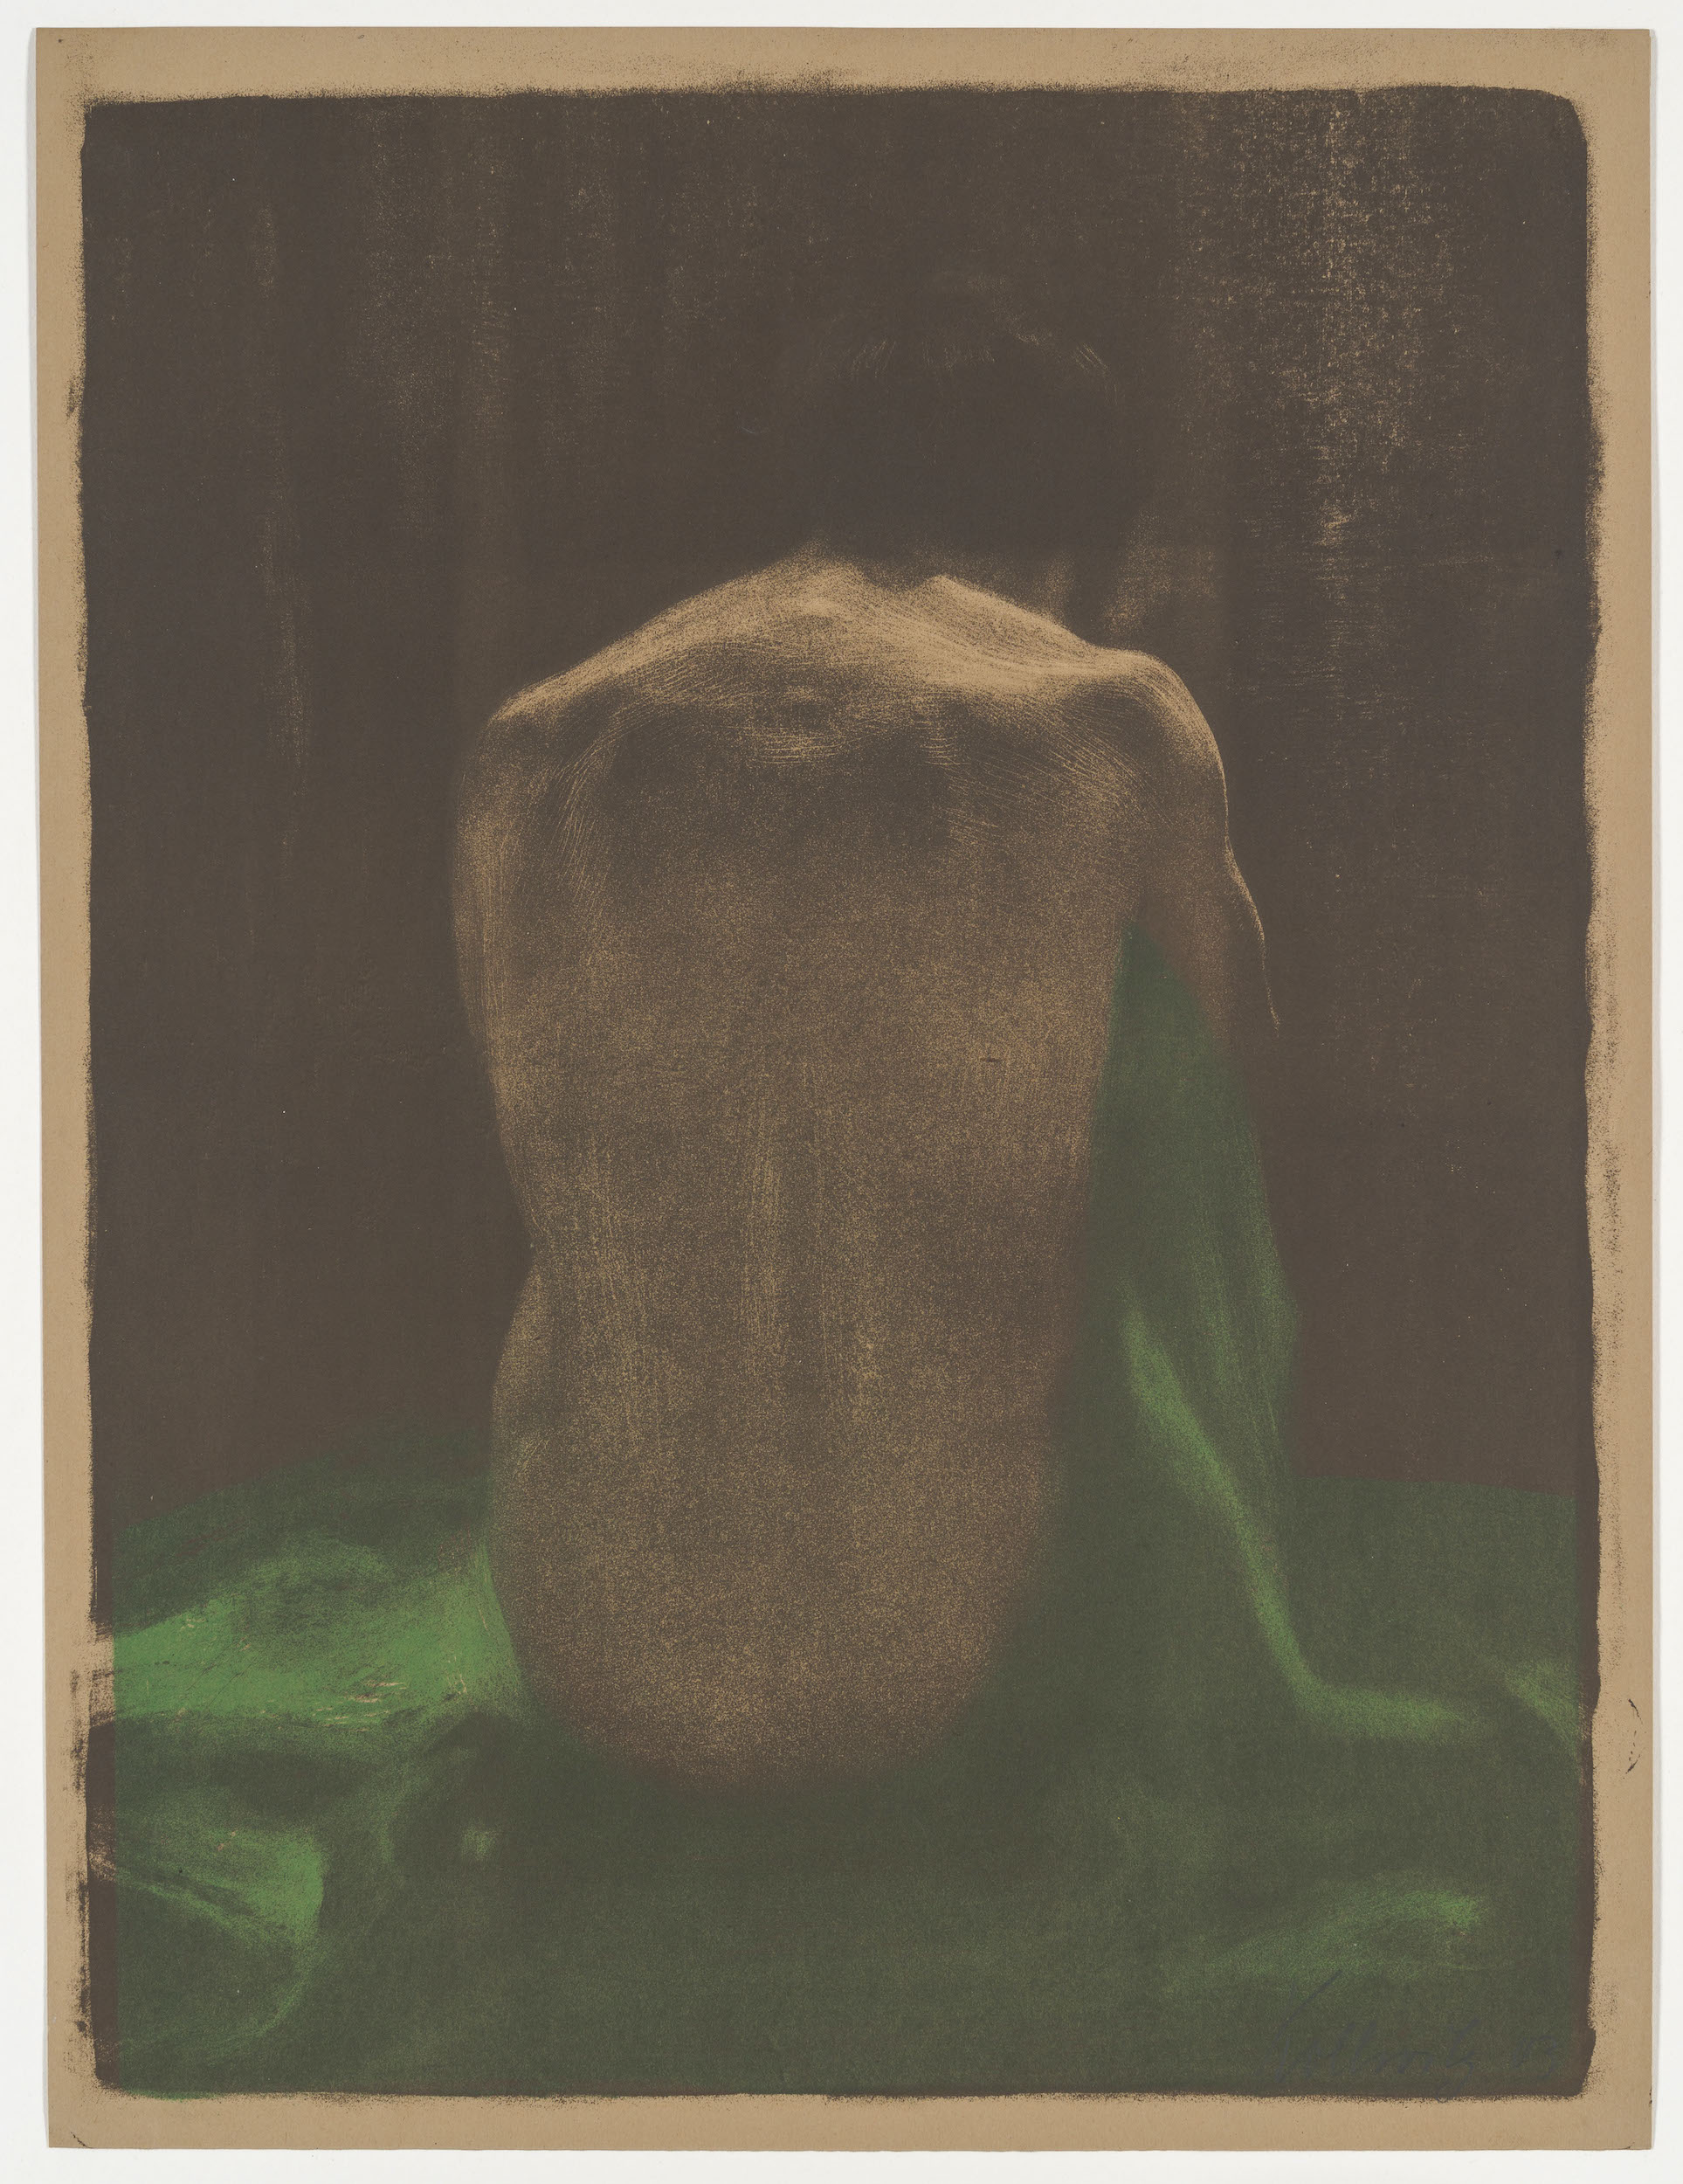 披著綠色披肩的女性裸體 by Käthe Kollwitz - 1903 年 - 58 x 44 釐米 